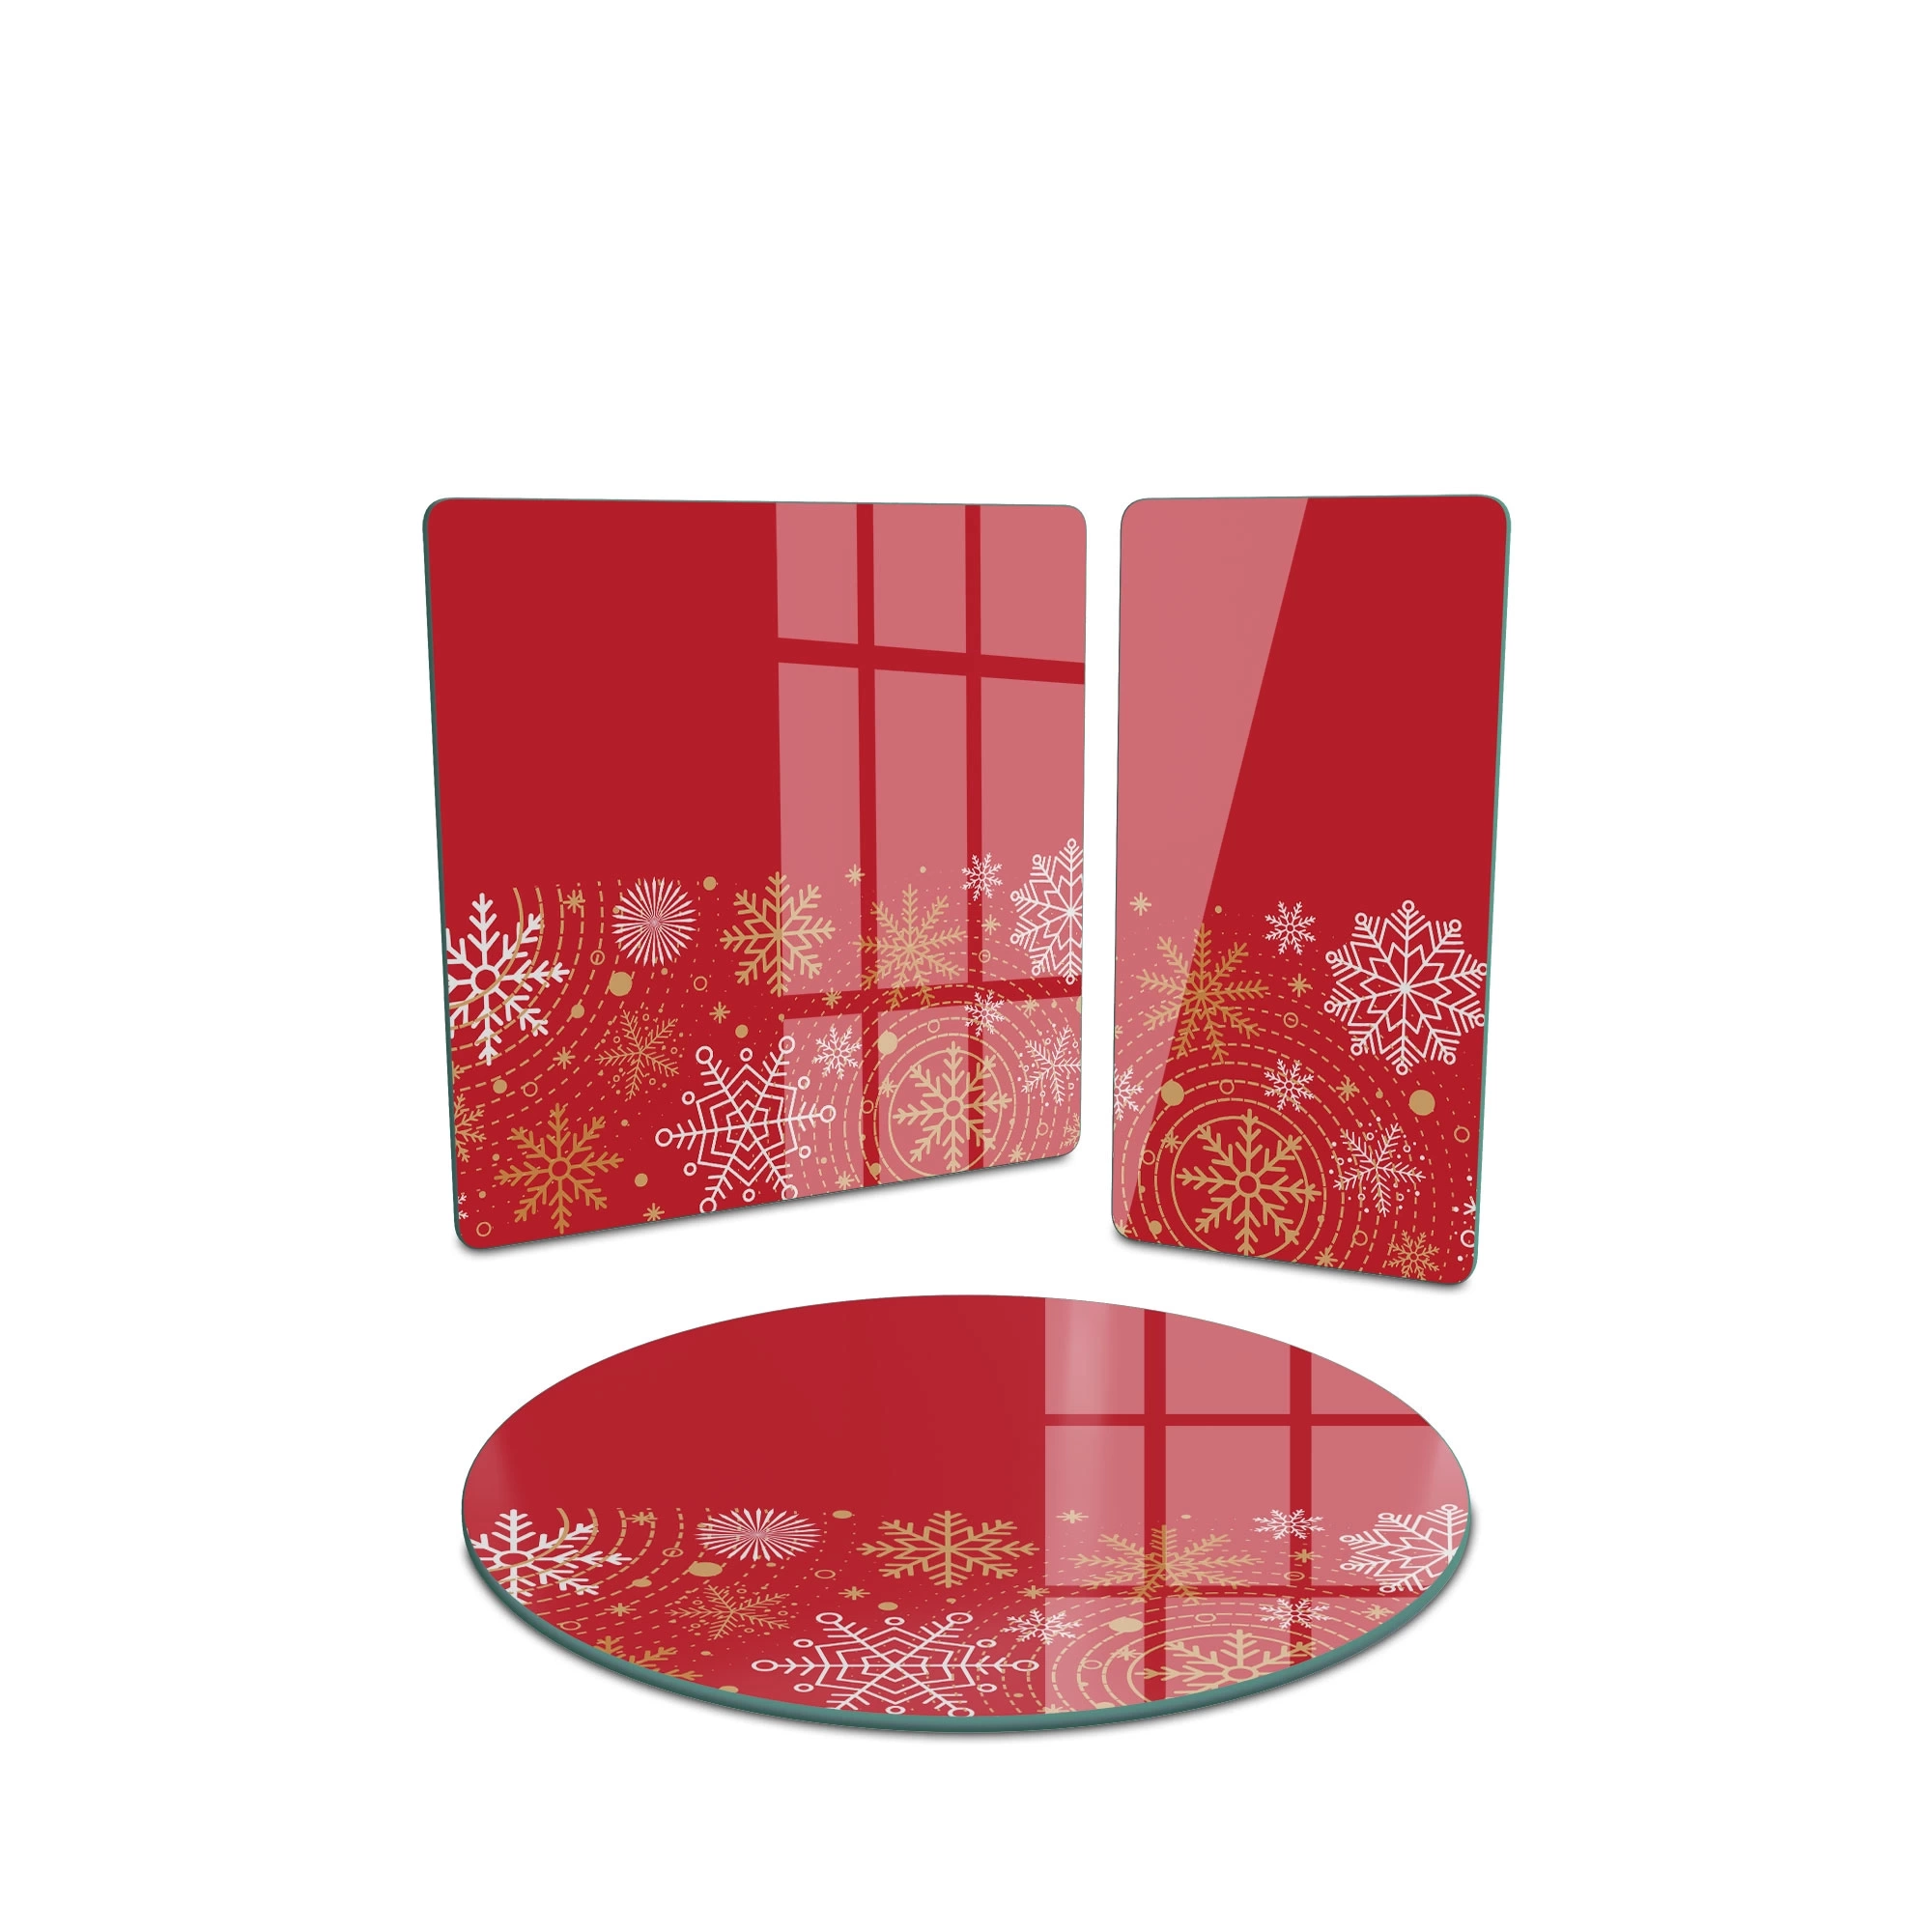 Decovetro Cam Sunum Servis Tabağı 3lü Karma Set Kırmızı Kar Tanesi Desenli